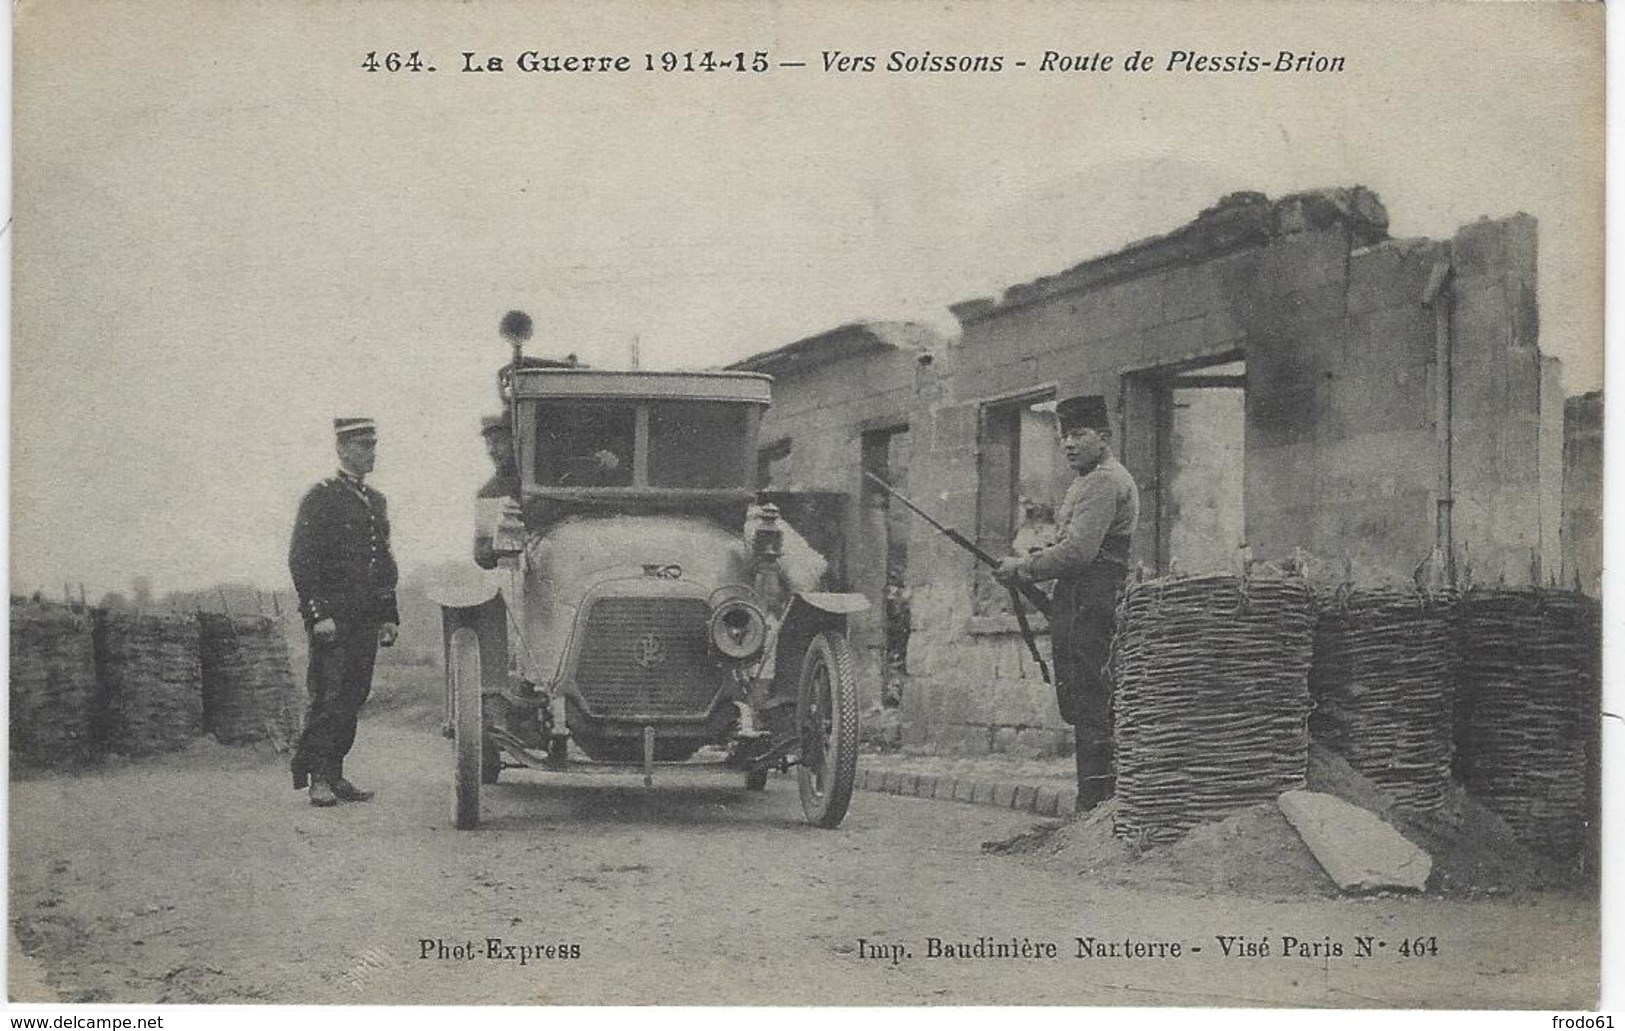 VERS SOISSONS, ROUTE DE PLESSIS-BRION - Guerre 1914-18